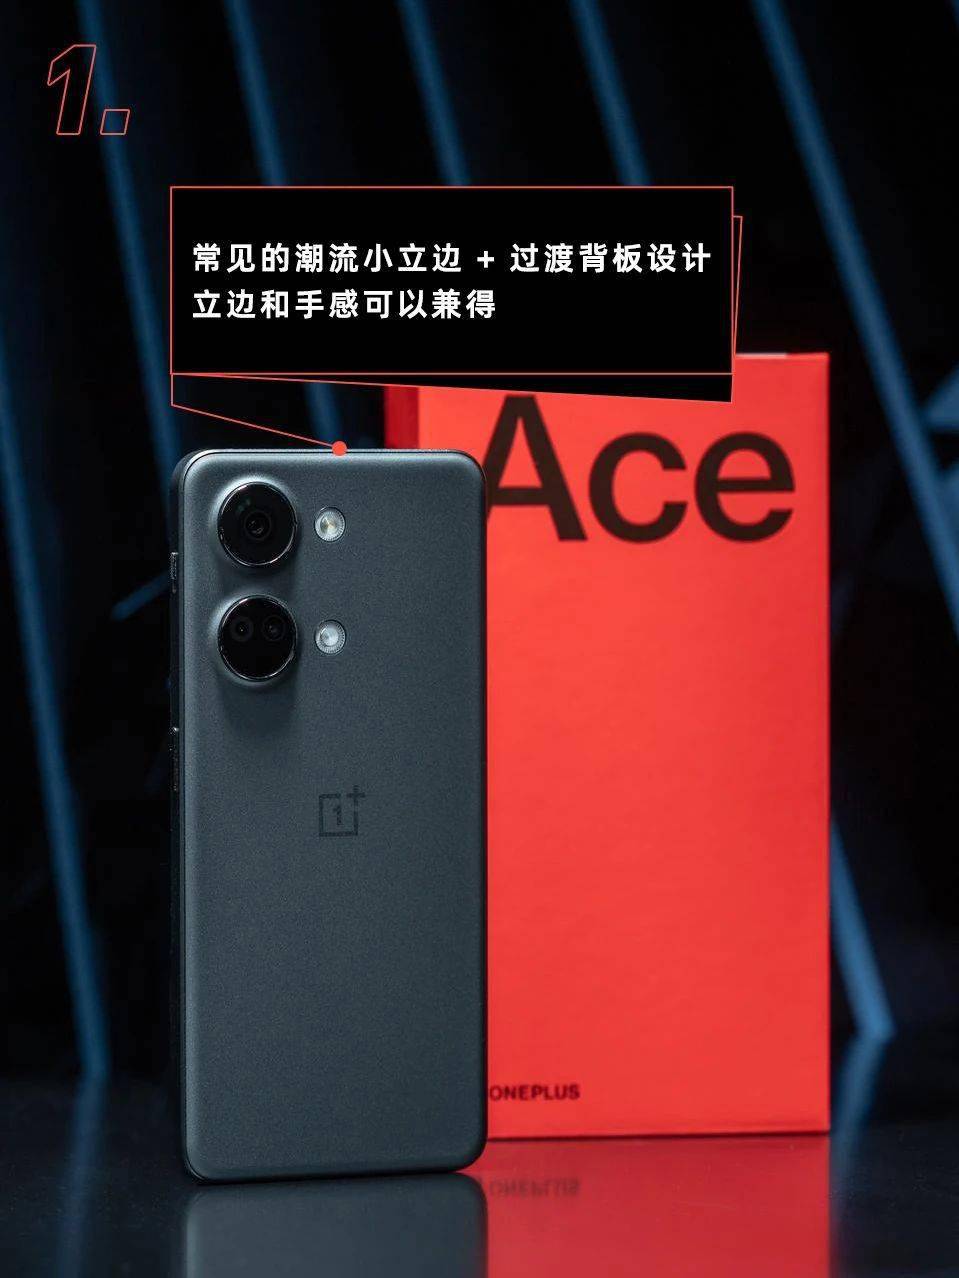 2299元起售的一加Ace 2V，就一个字，便宜。